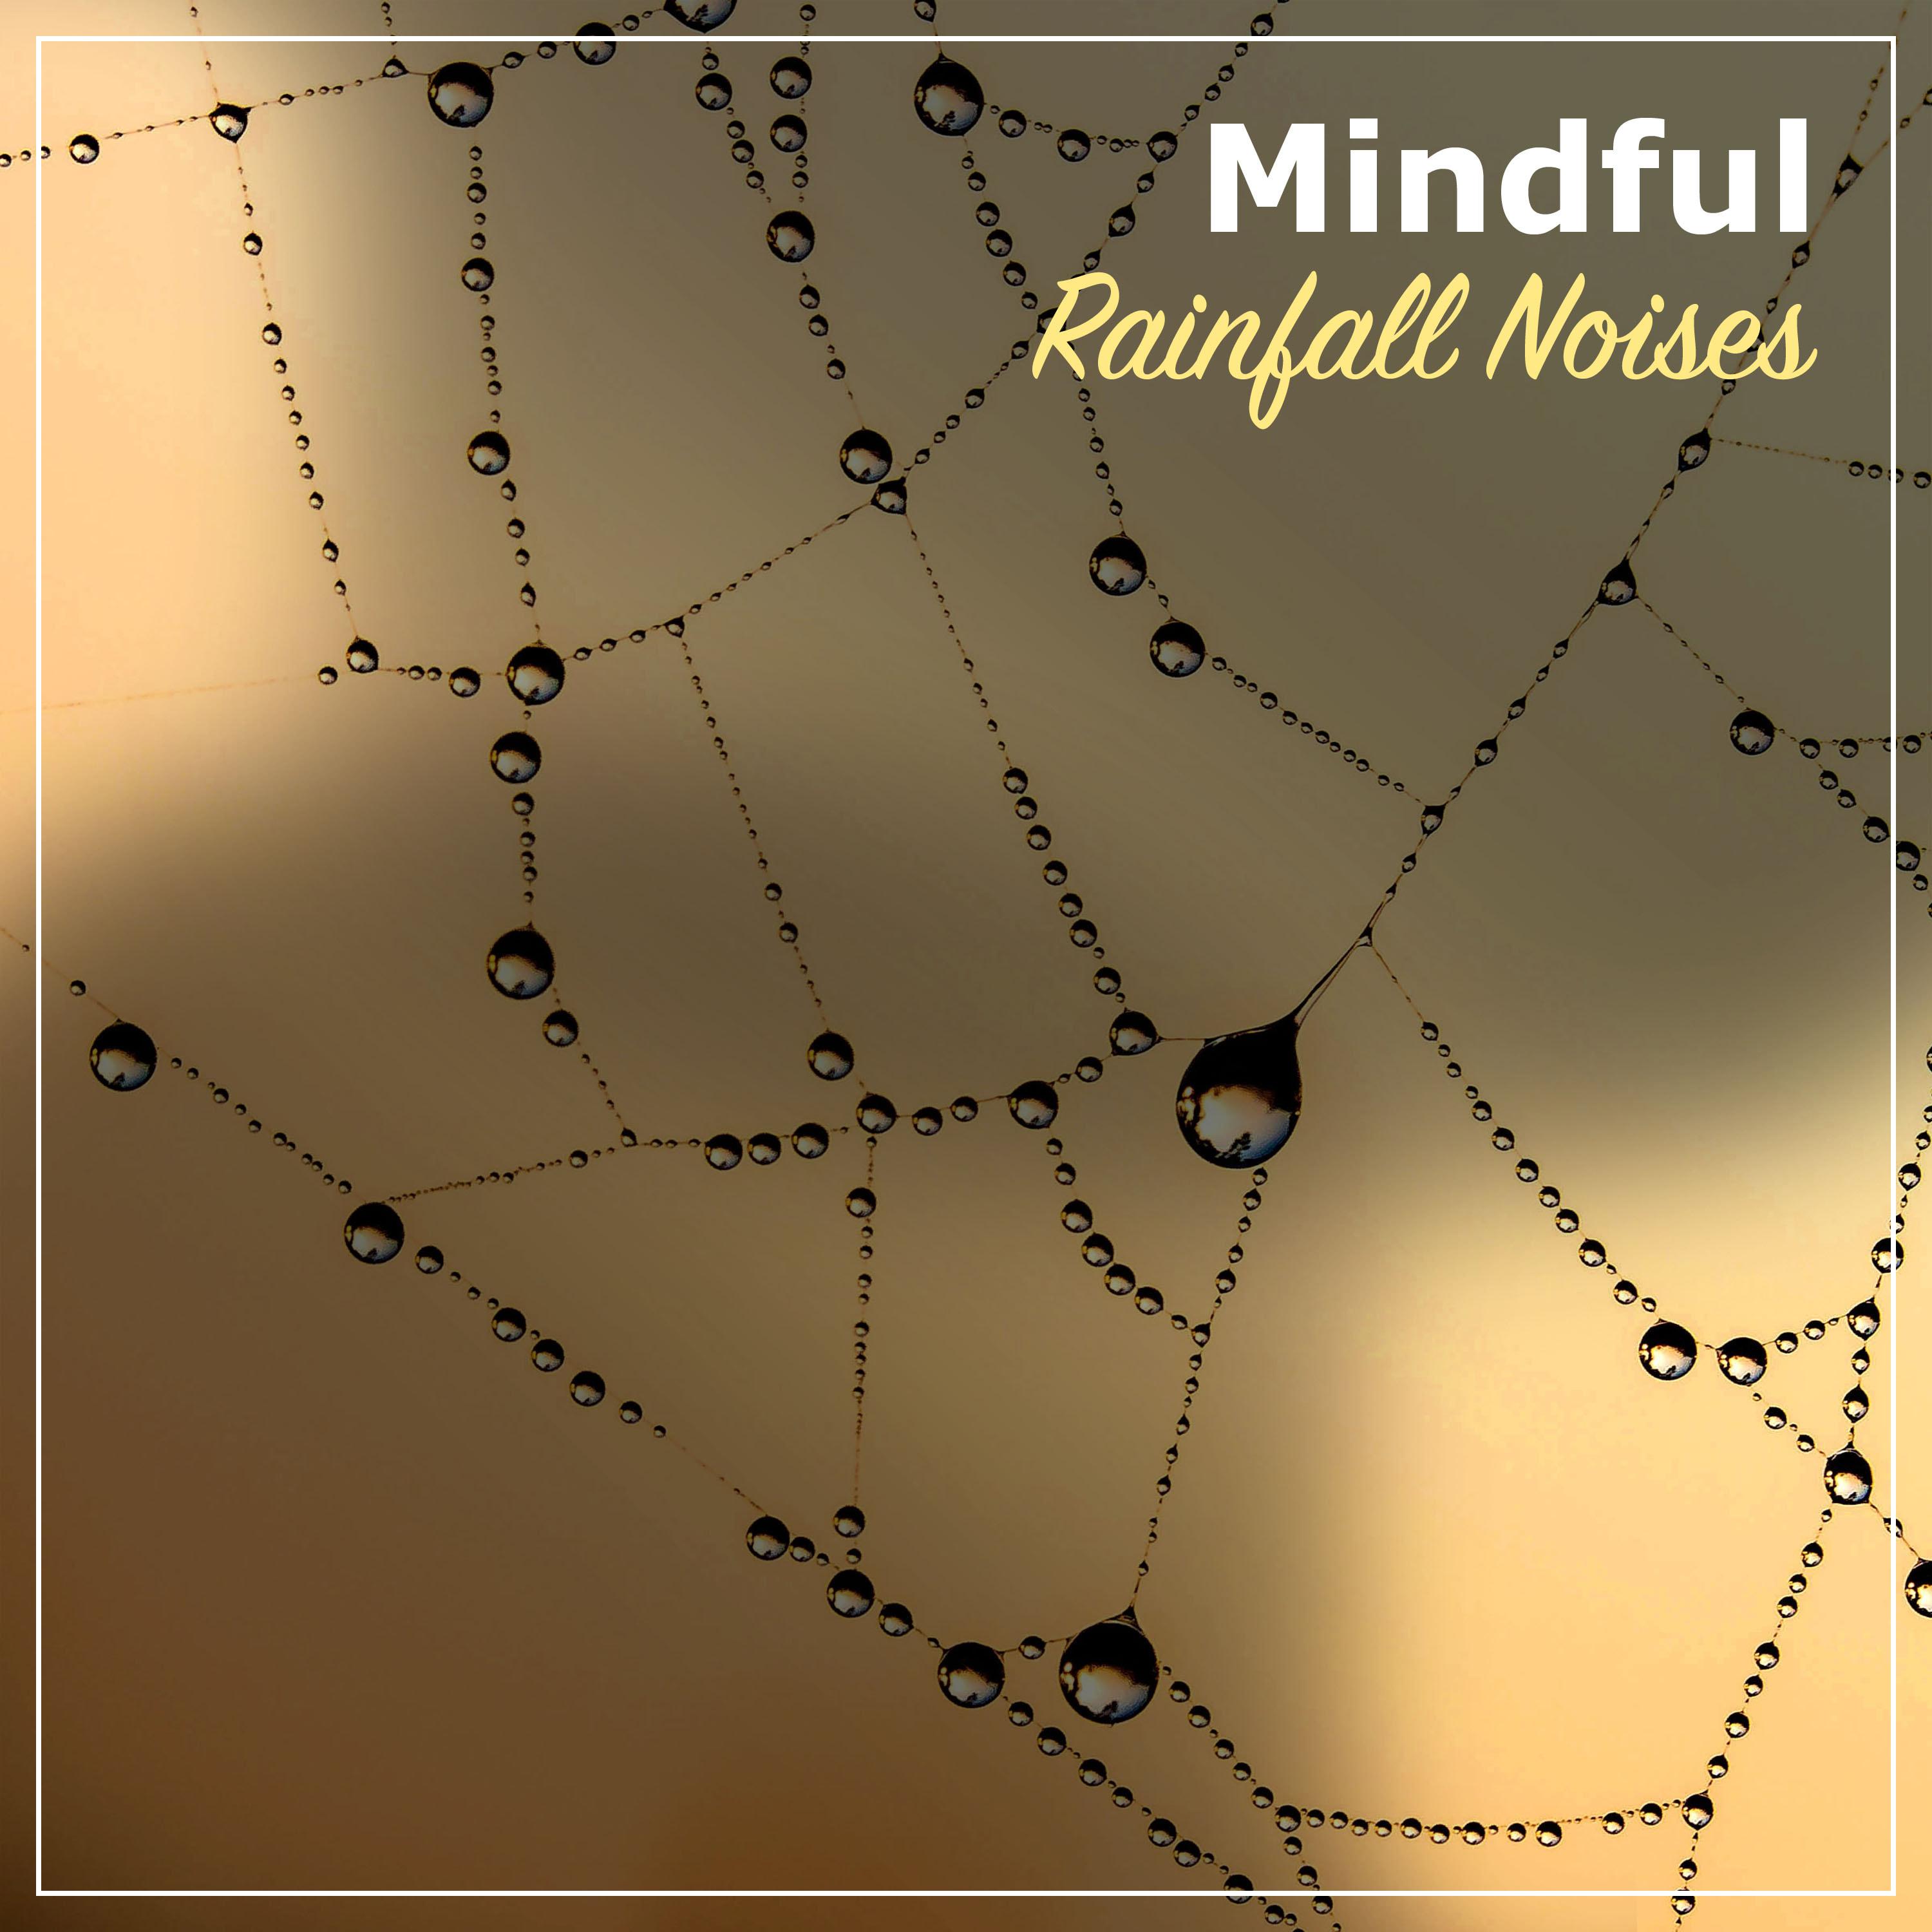 #17 Mindful Rainfall Noises